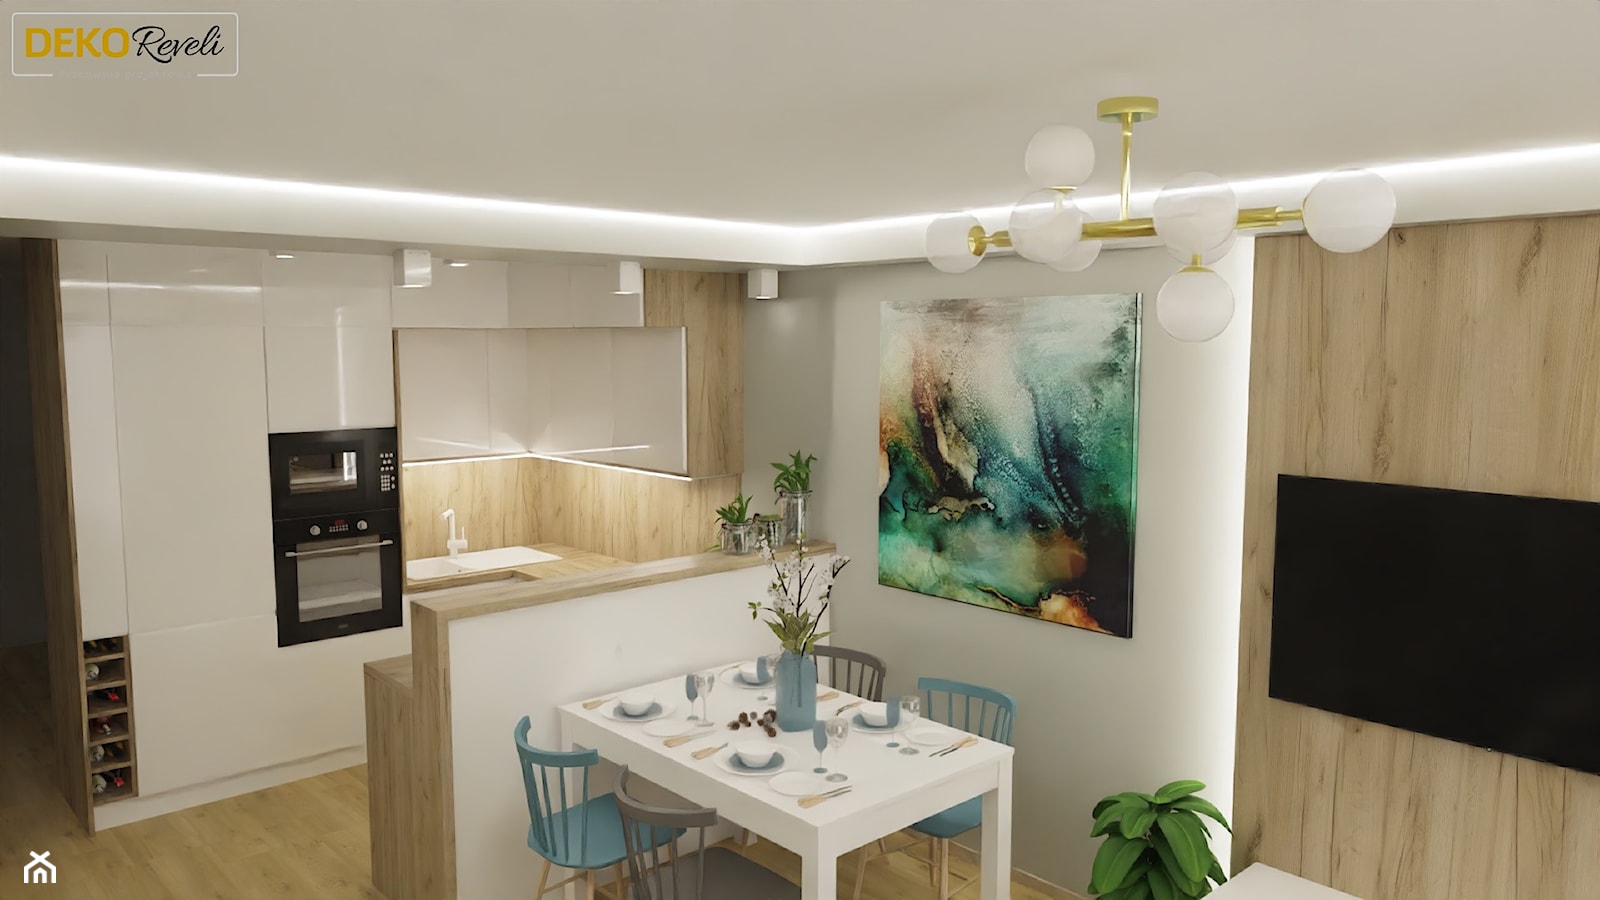 Projekt pokoju dziennego z kuchnią 25m2 - Salon, styl nowoczesny - zdjęcie od Dekoreveli - Homebook